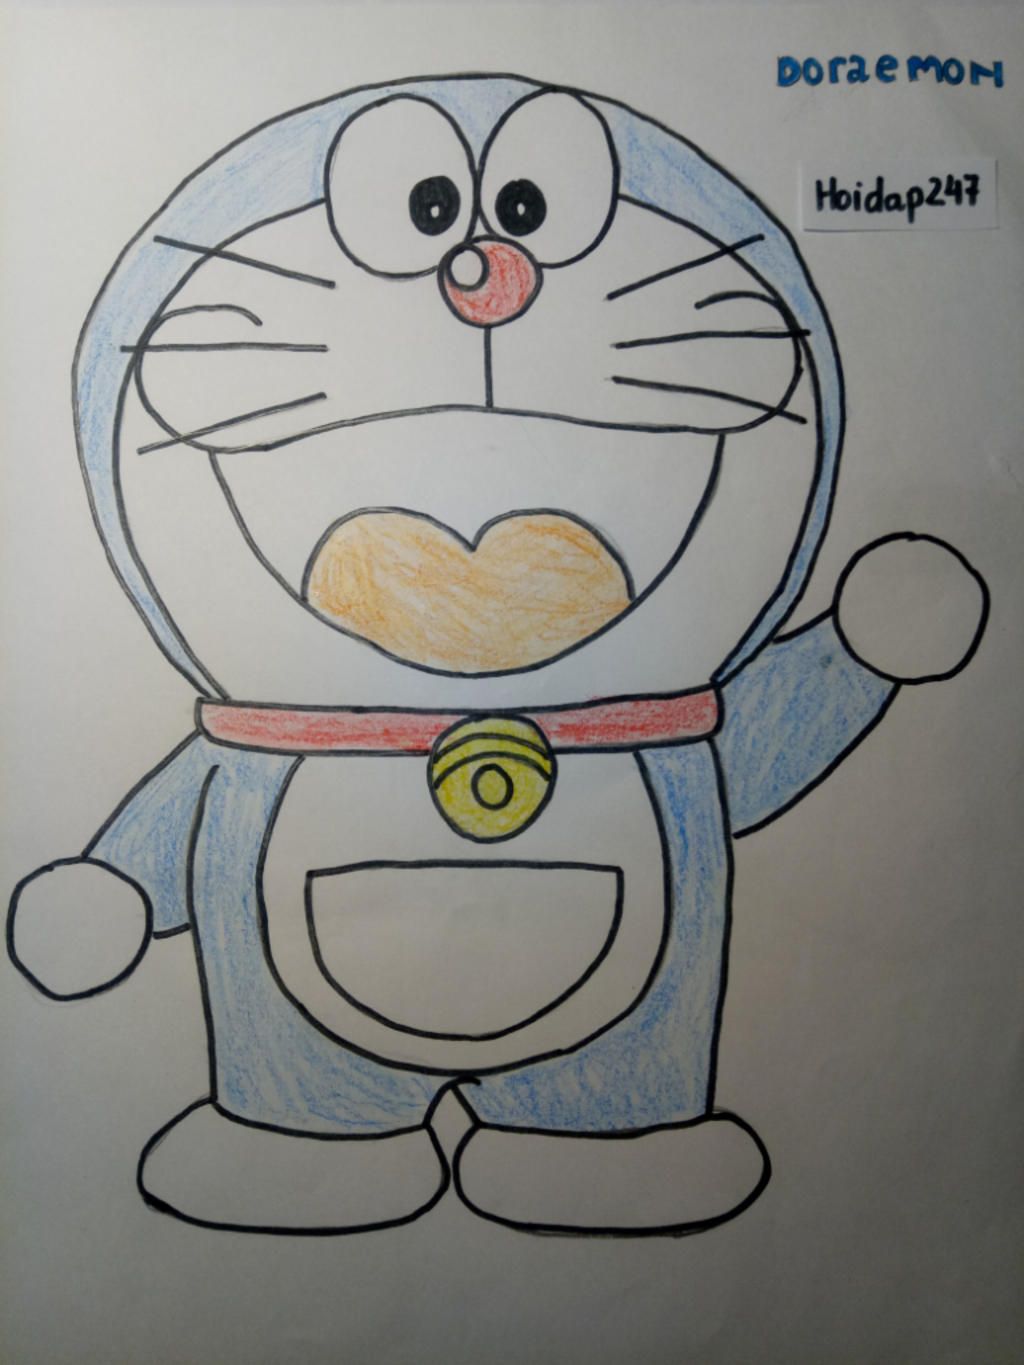 Doraemon vẽ tranh rất đáng yêu và dễ thương. Nếu bạn là một fan của bộ truyện tranh này, bạn sẽ không thể bỏ qua hình ảnh này. Hãy xem Doraemon vẽ bức tranh tuyệt đẹp và cùng chìm đắm trong thế giới màu sắc đầy sáng tạo của anh ấy. Đảm bảo bạn sẽ có những giây phút thư giãn tuyệt vời khi xem hình ảnh này!